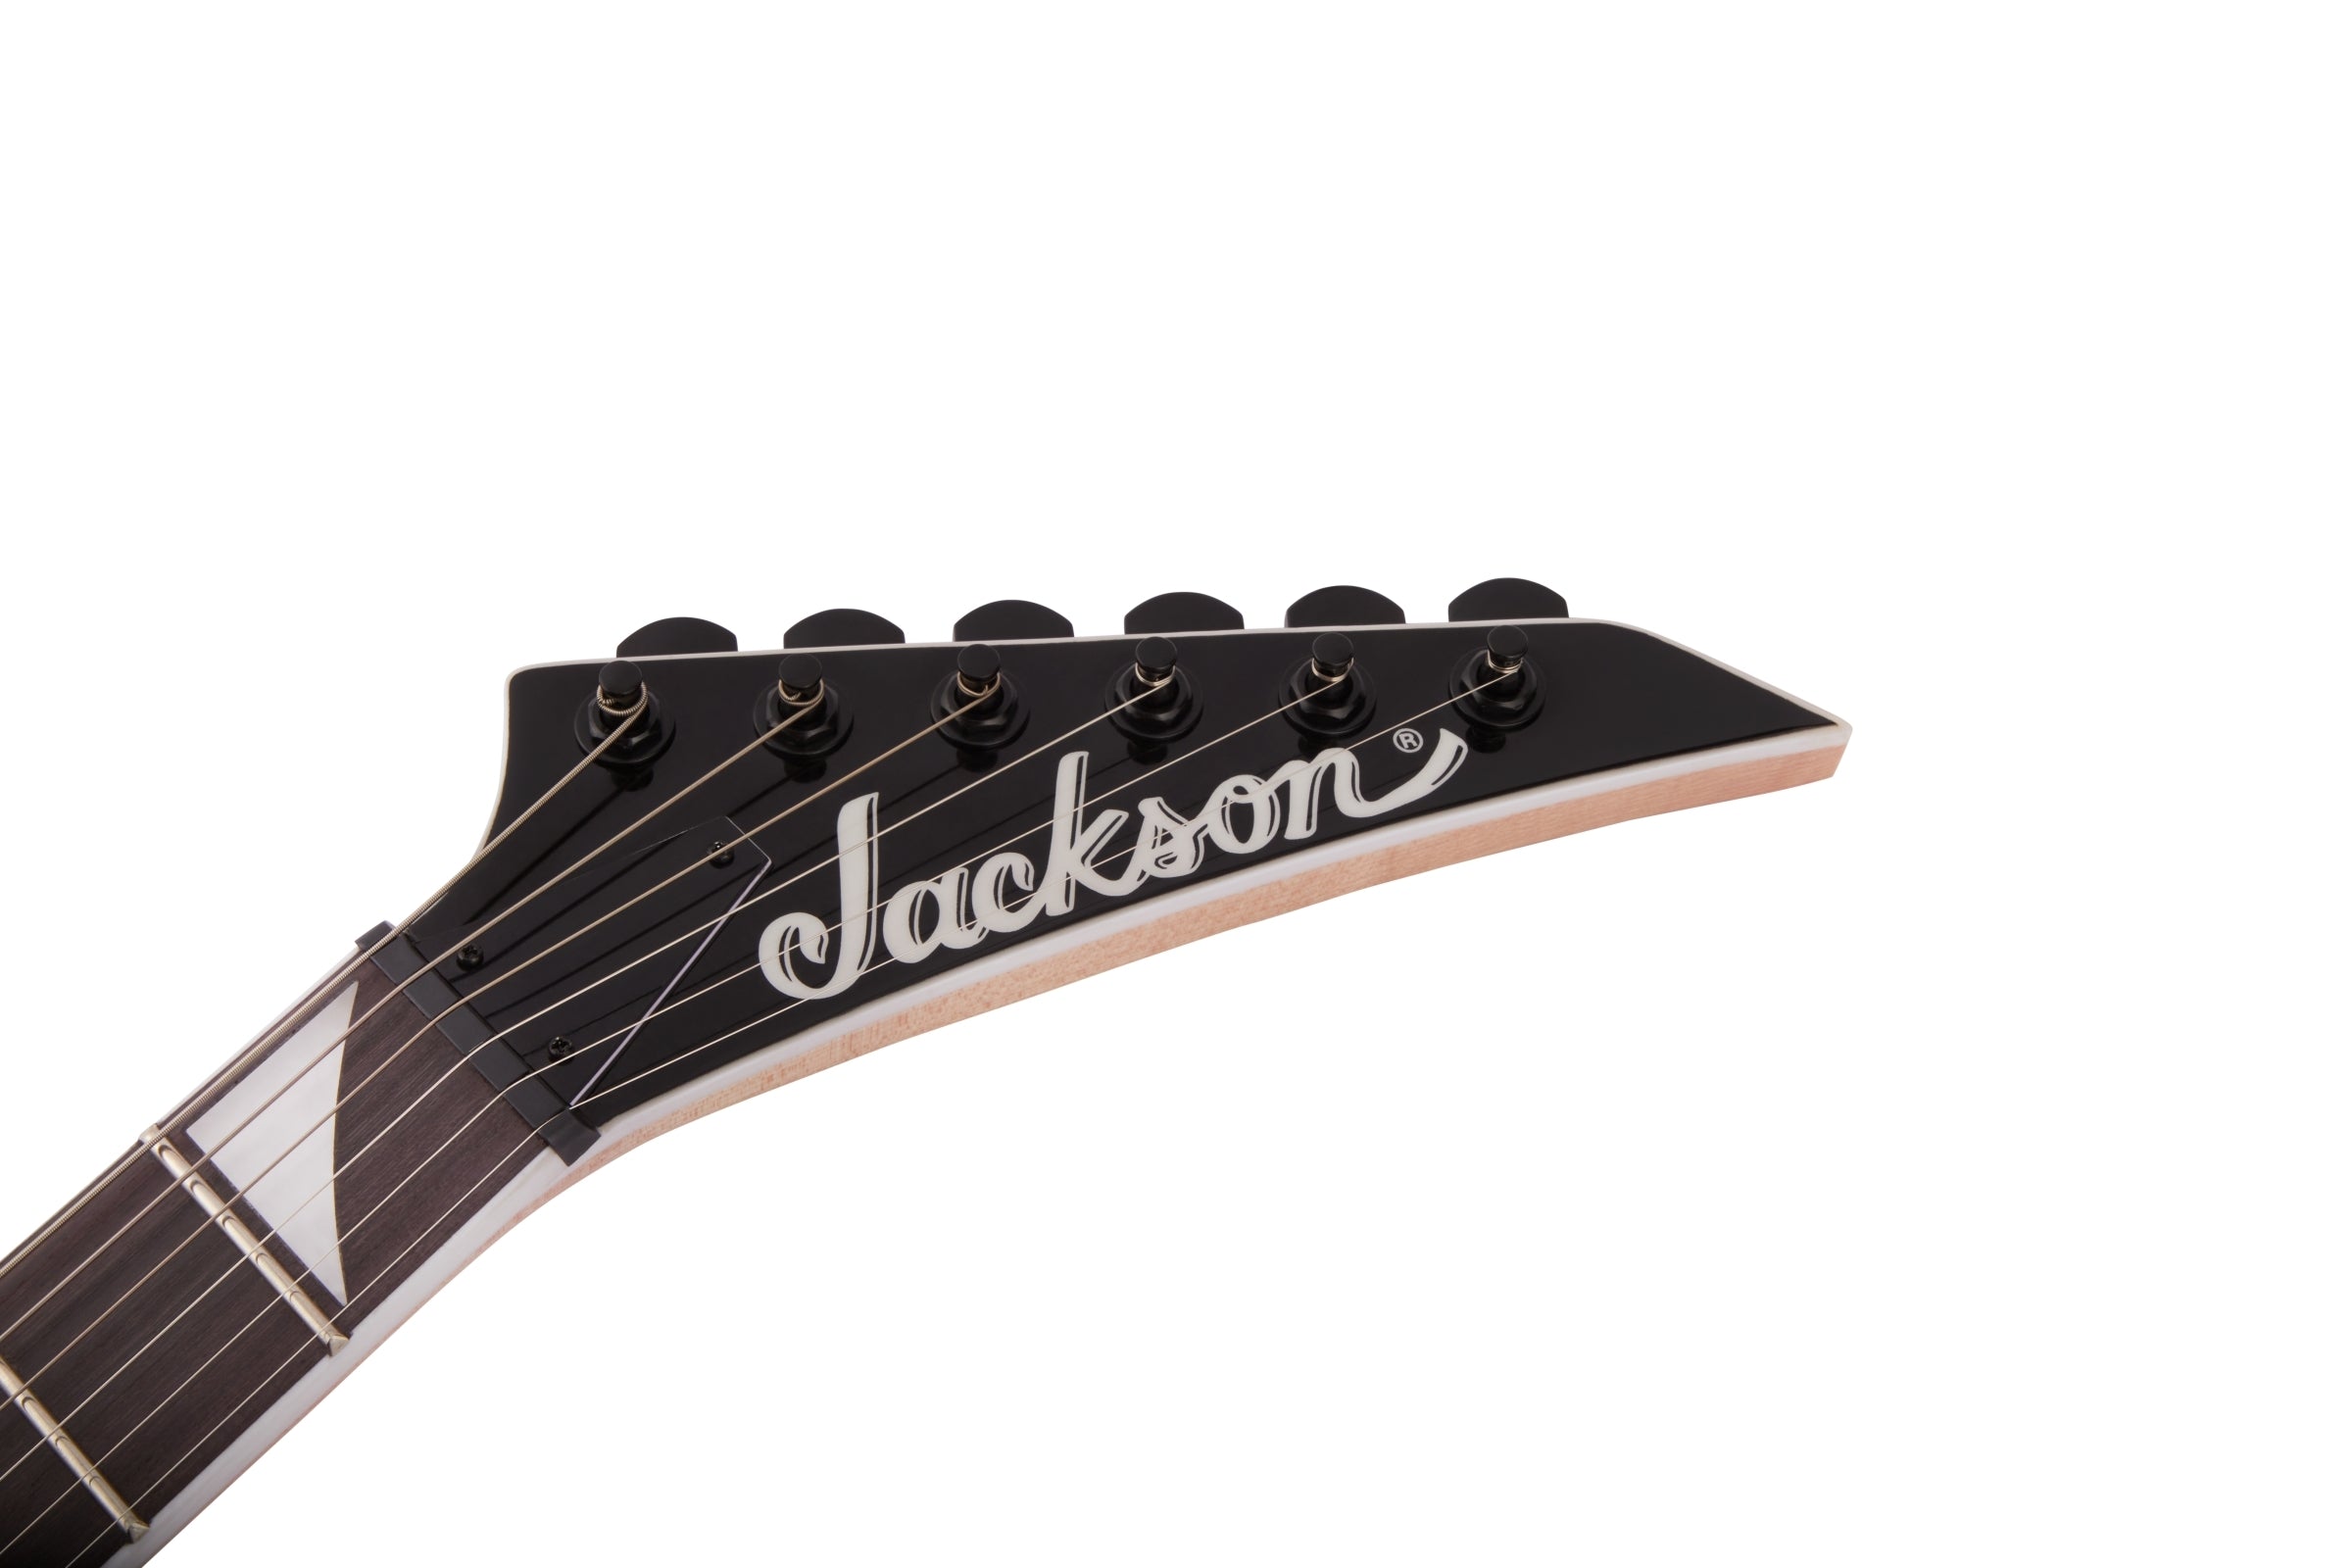 Jackson JS Series Dinky Arch Top JS32Q Electric Guitar - Transparent Purple Burst